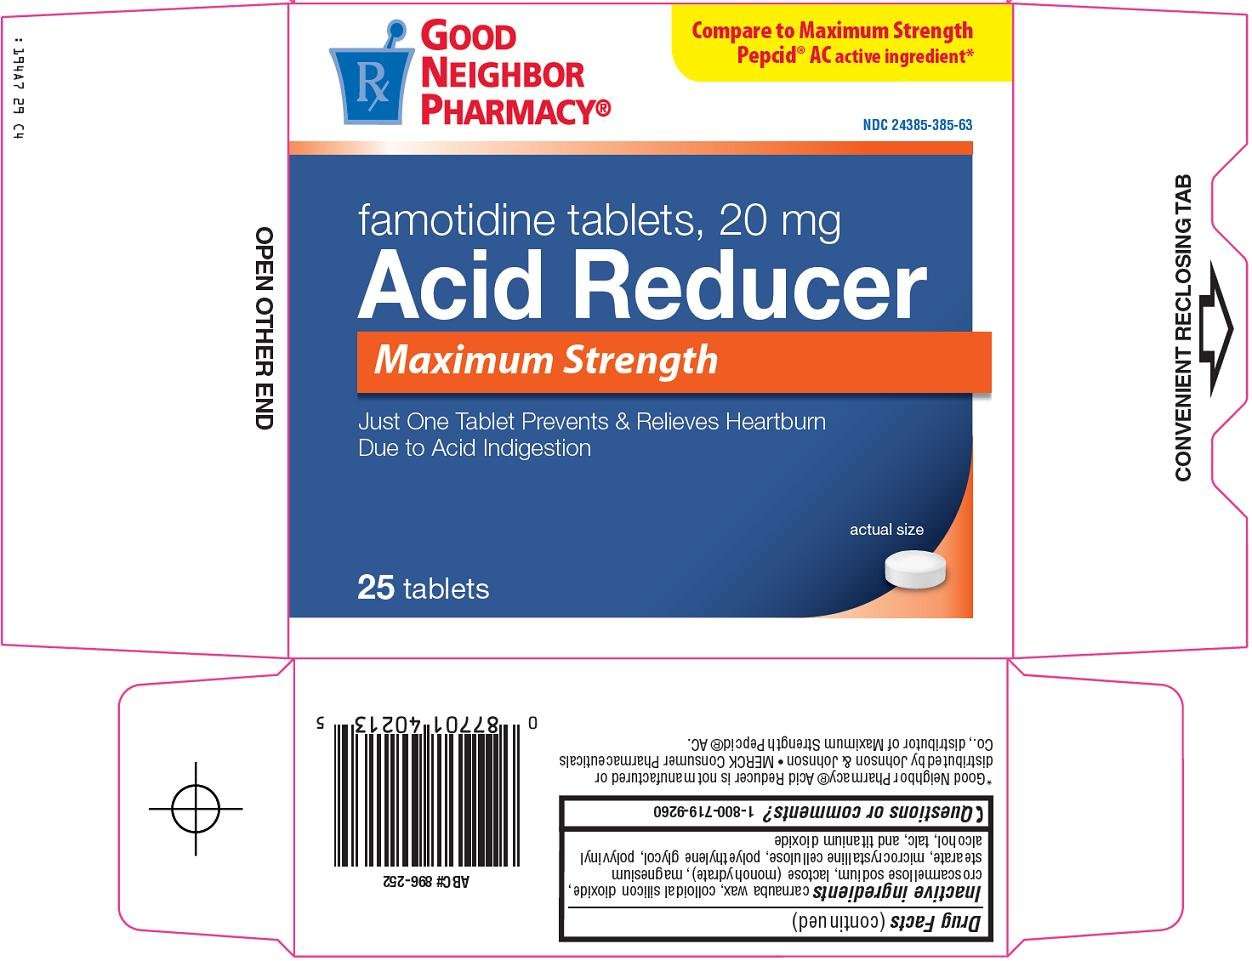 Good Neighbor Pharmacy Acid Reducer